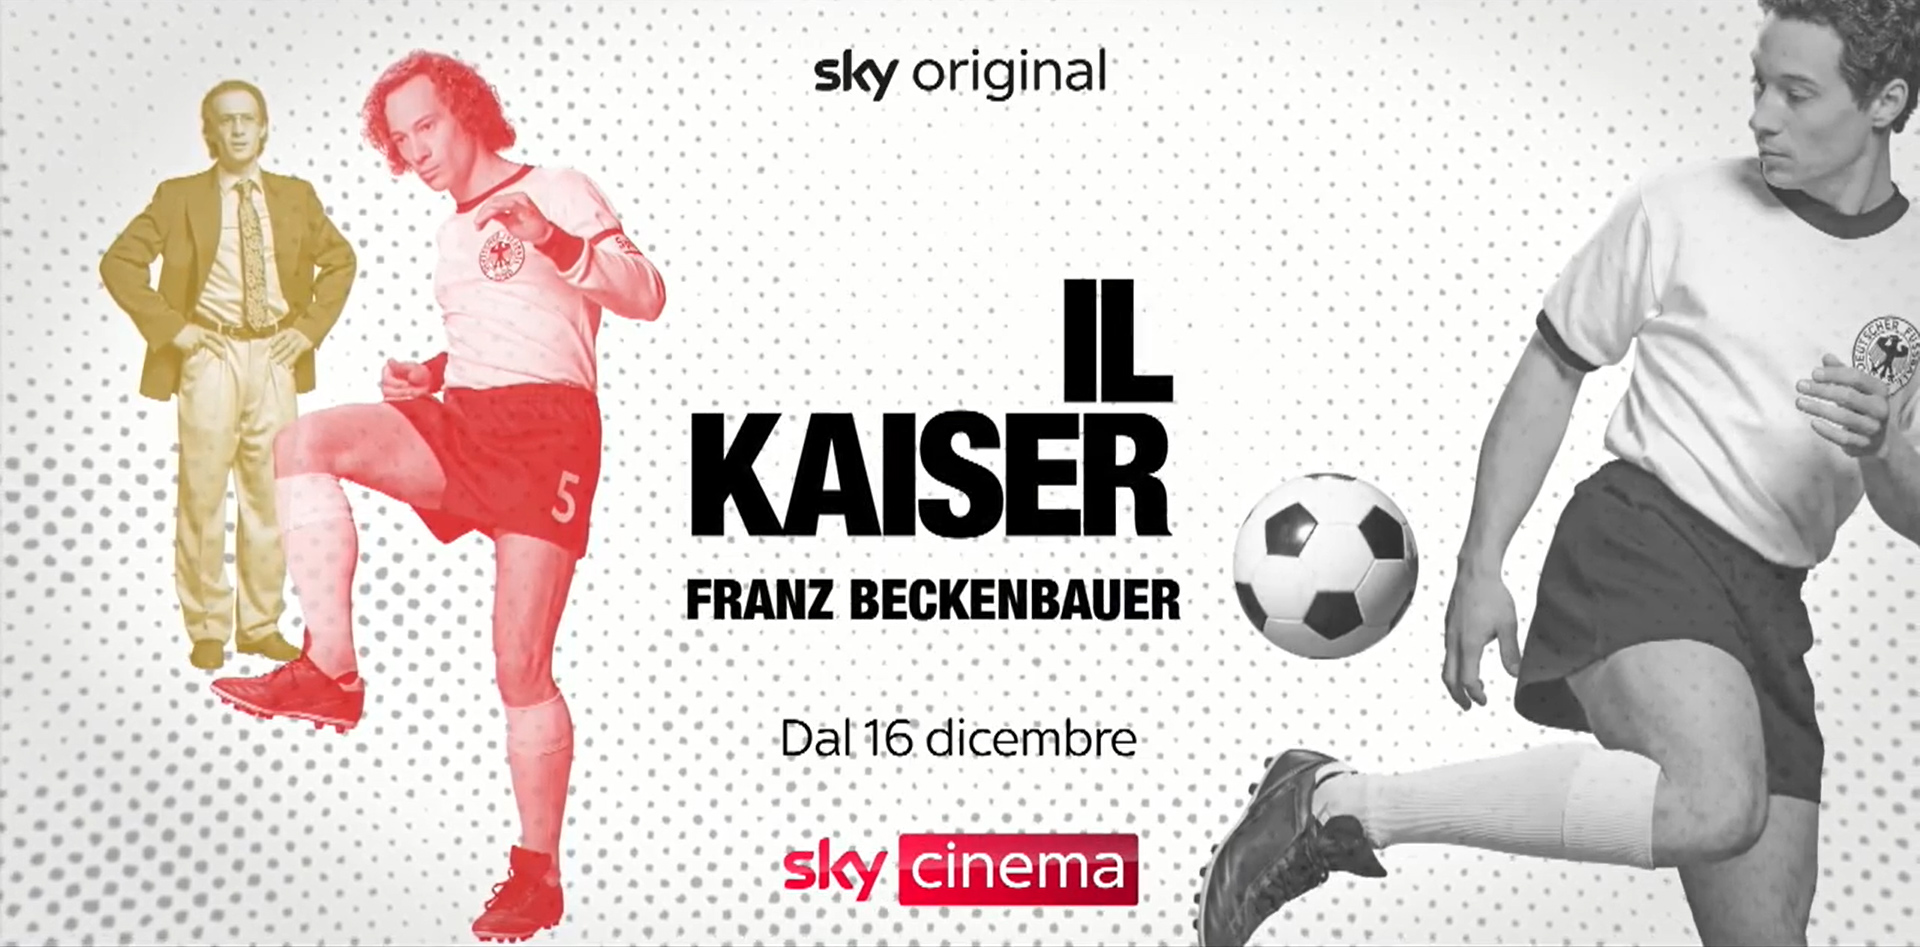 Il Kaiser - Franz Beckenbauer, trailer film Sky Original